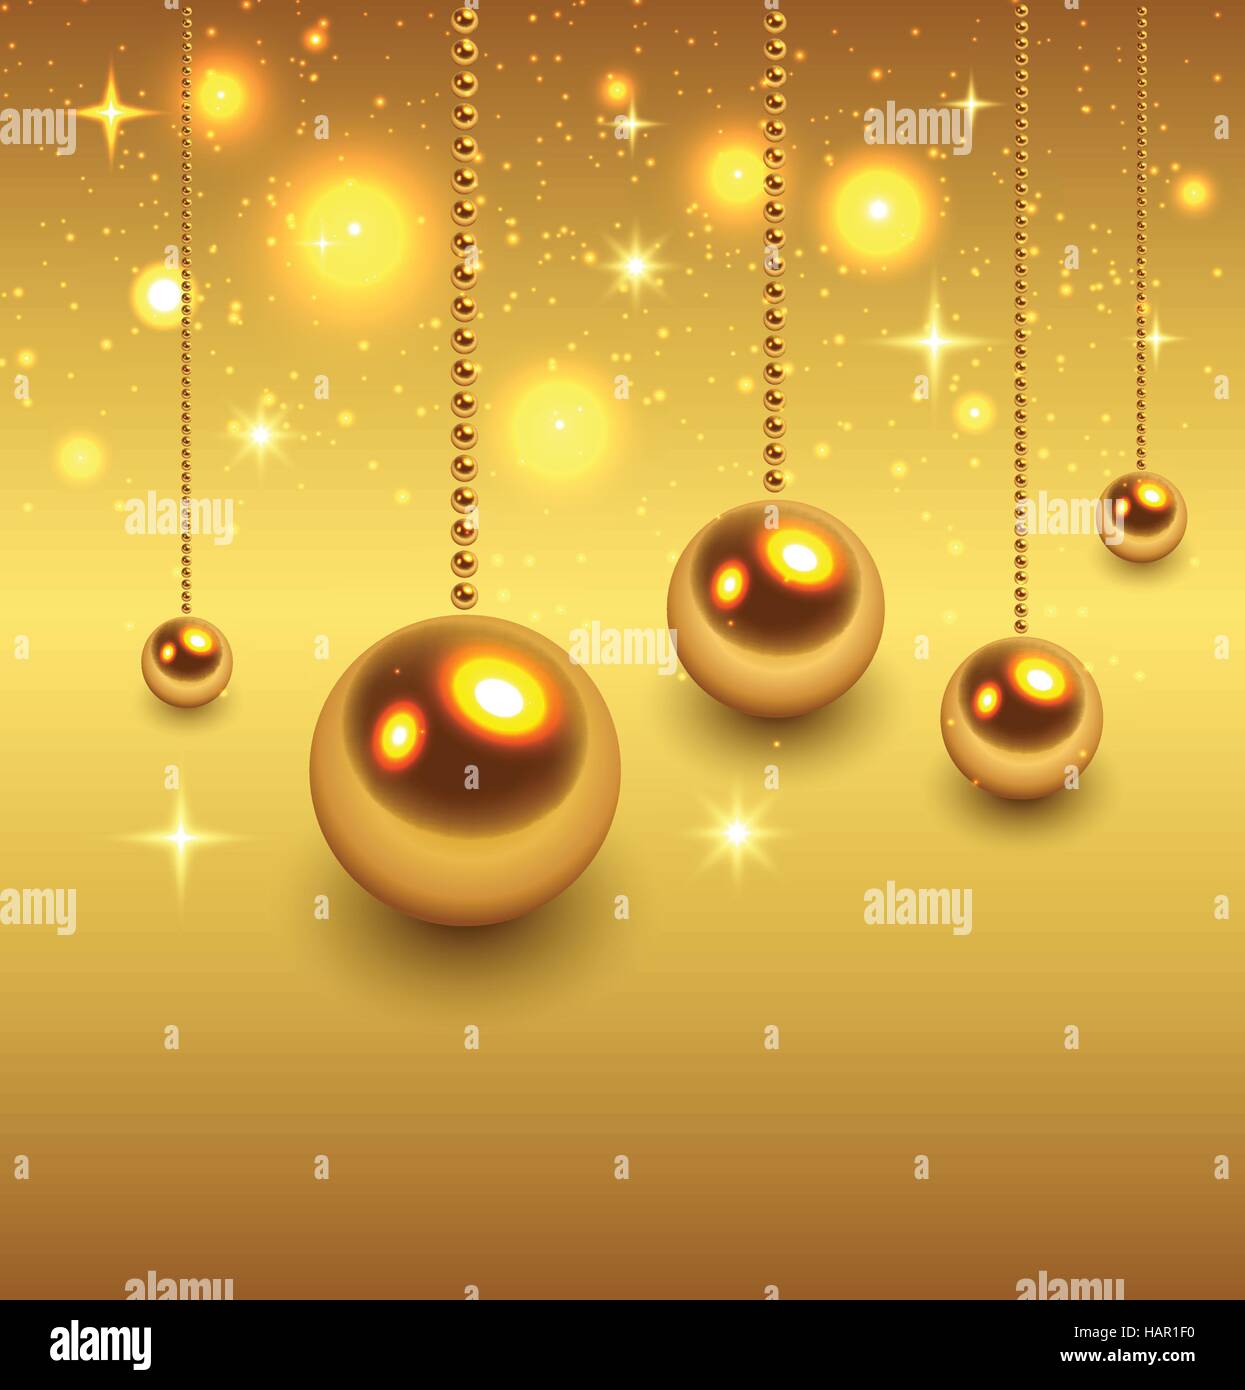 Immagini Natale Oro.Sfondo Di Natale Oro Illustrazione Vettoriale Immagine E Vettoriale Alamy